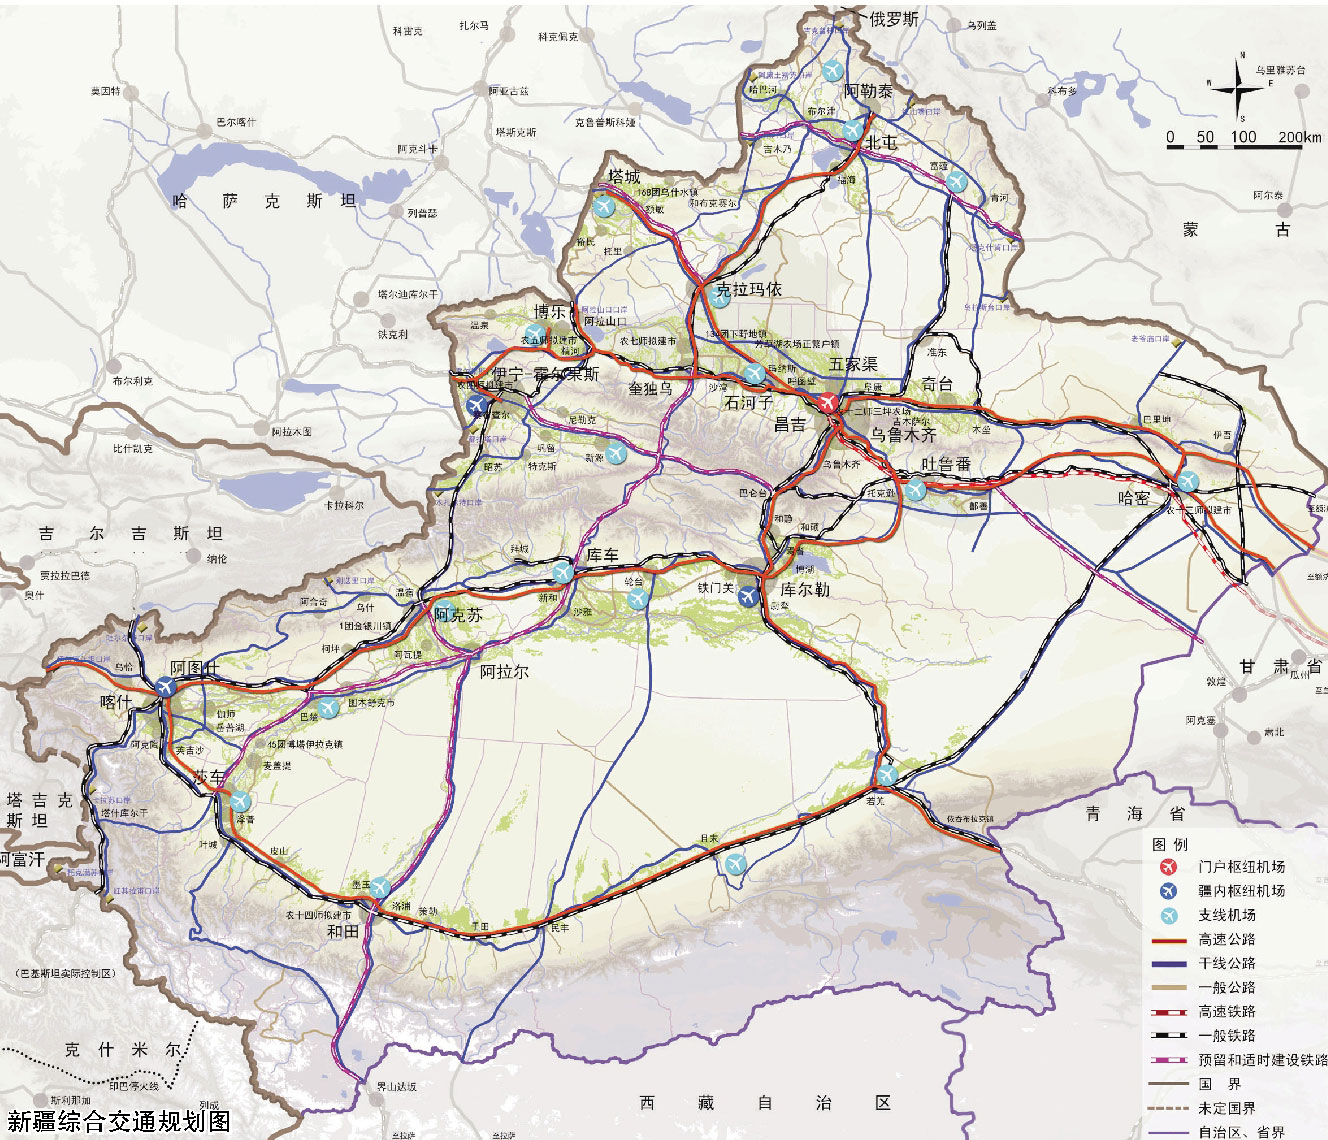 方舆 - 经济地理 - 乌鲁木齐市城市规划图（2015年4月10日公布） - Powered by phpwind